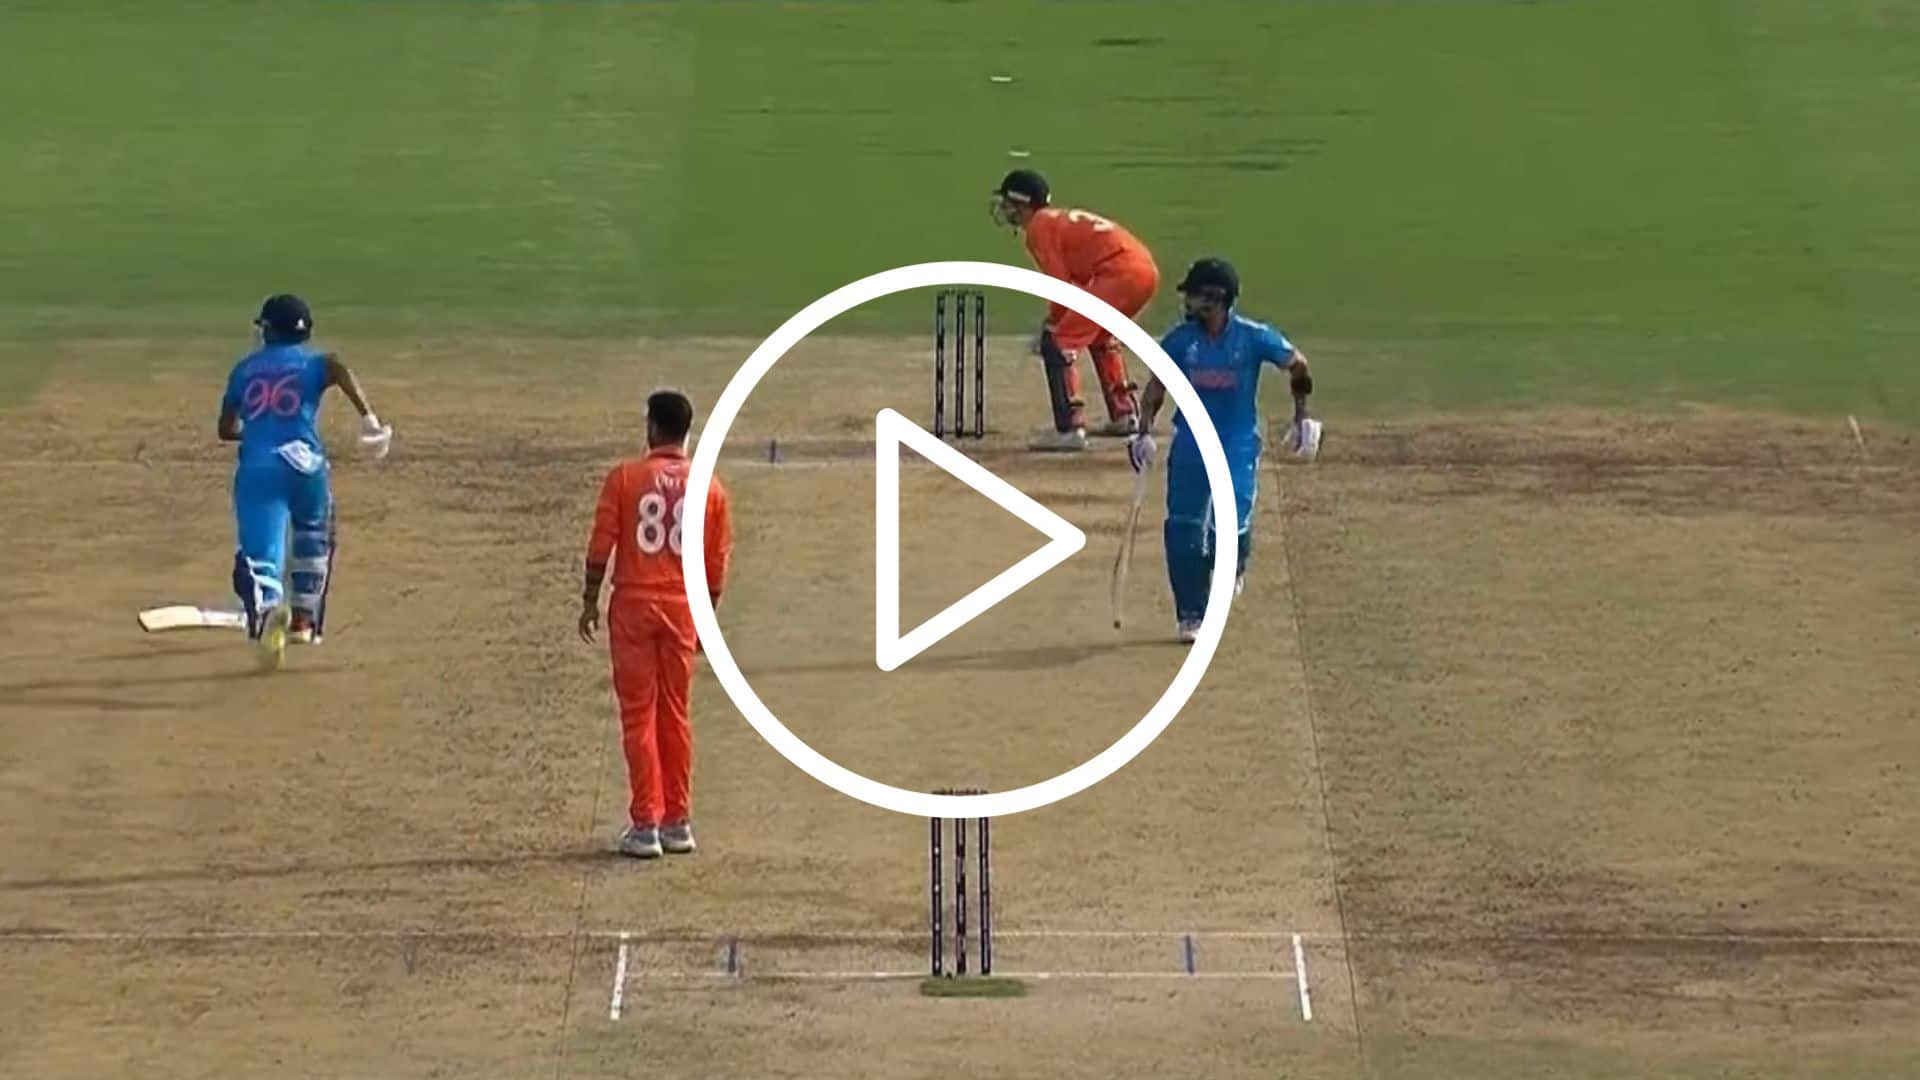 [Watch] Shreyas Iyer ‘Dropped’ His Bat While ‘Epic’ Sprinting With Virat Kohli